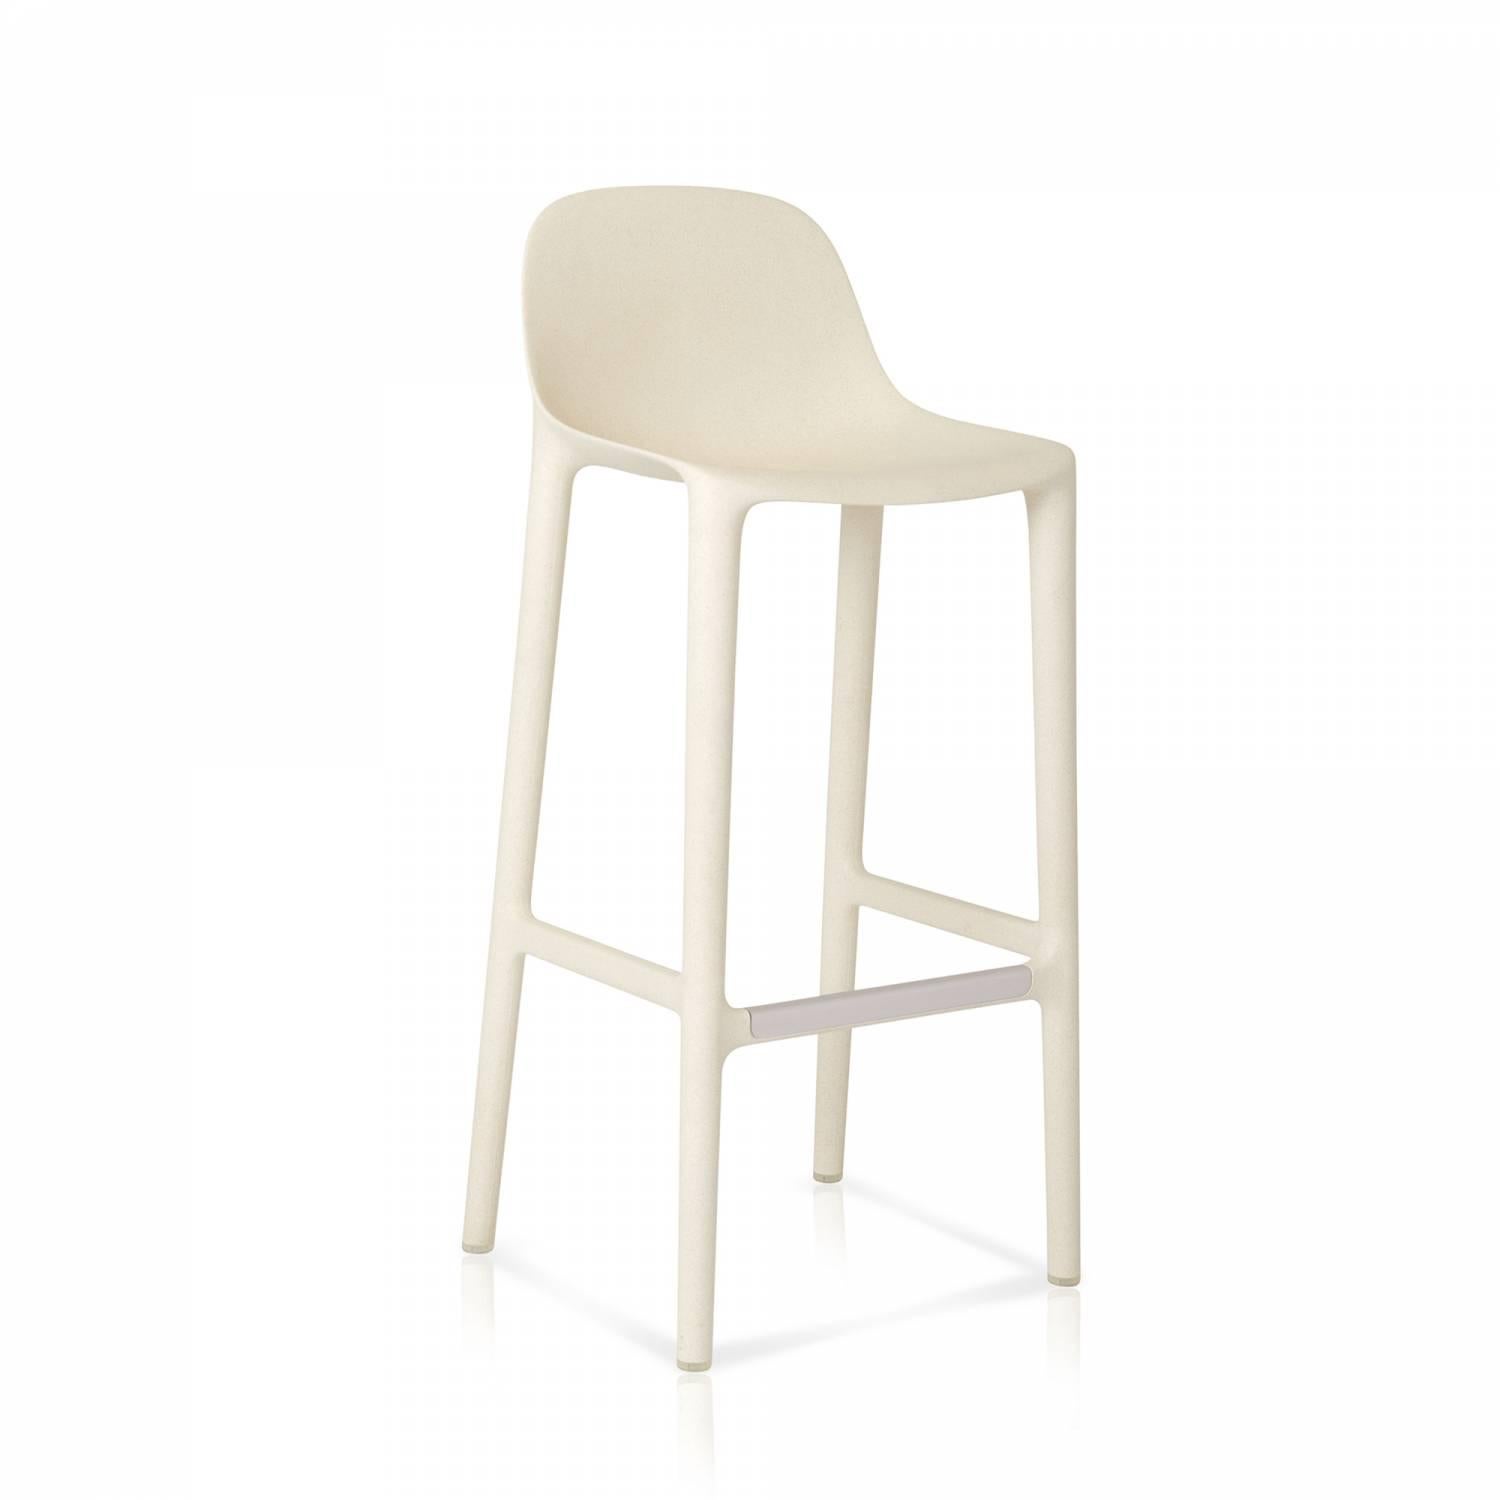 Philippe Starck und Emeco haben sich zusammengetan, um einen neuen Stuhl zu entwerfen, der wiederverwertet, wiederverwendet und recycelt werden kann - und der für eine lange Lebensdauer konzipiert ist. Der Stuhl besteht zu 75 % aus